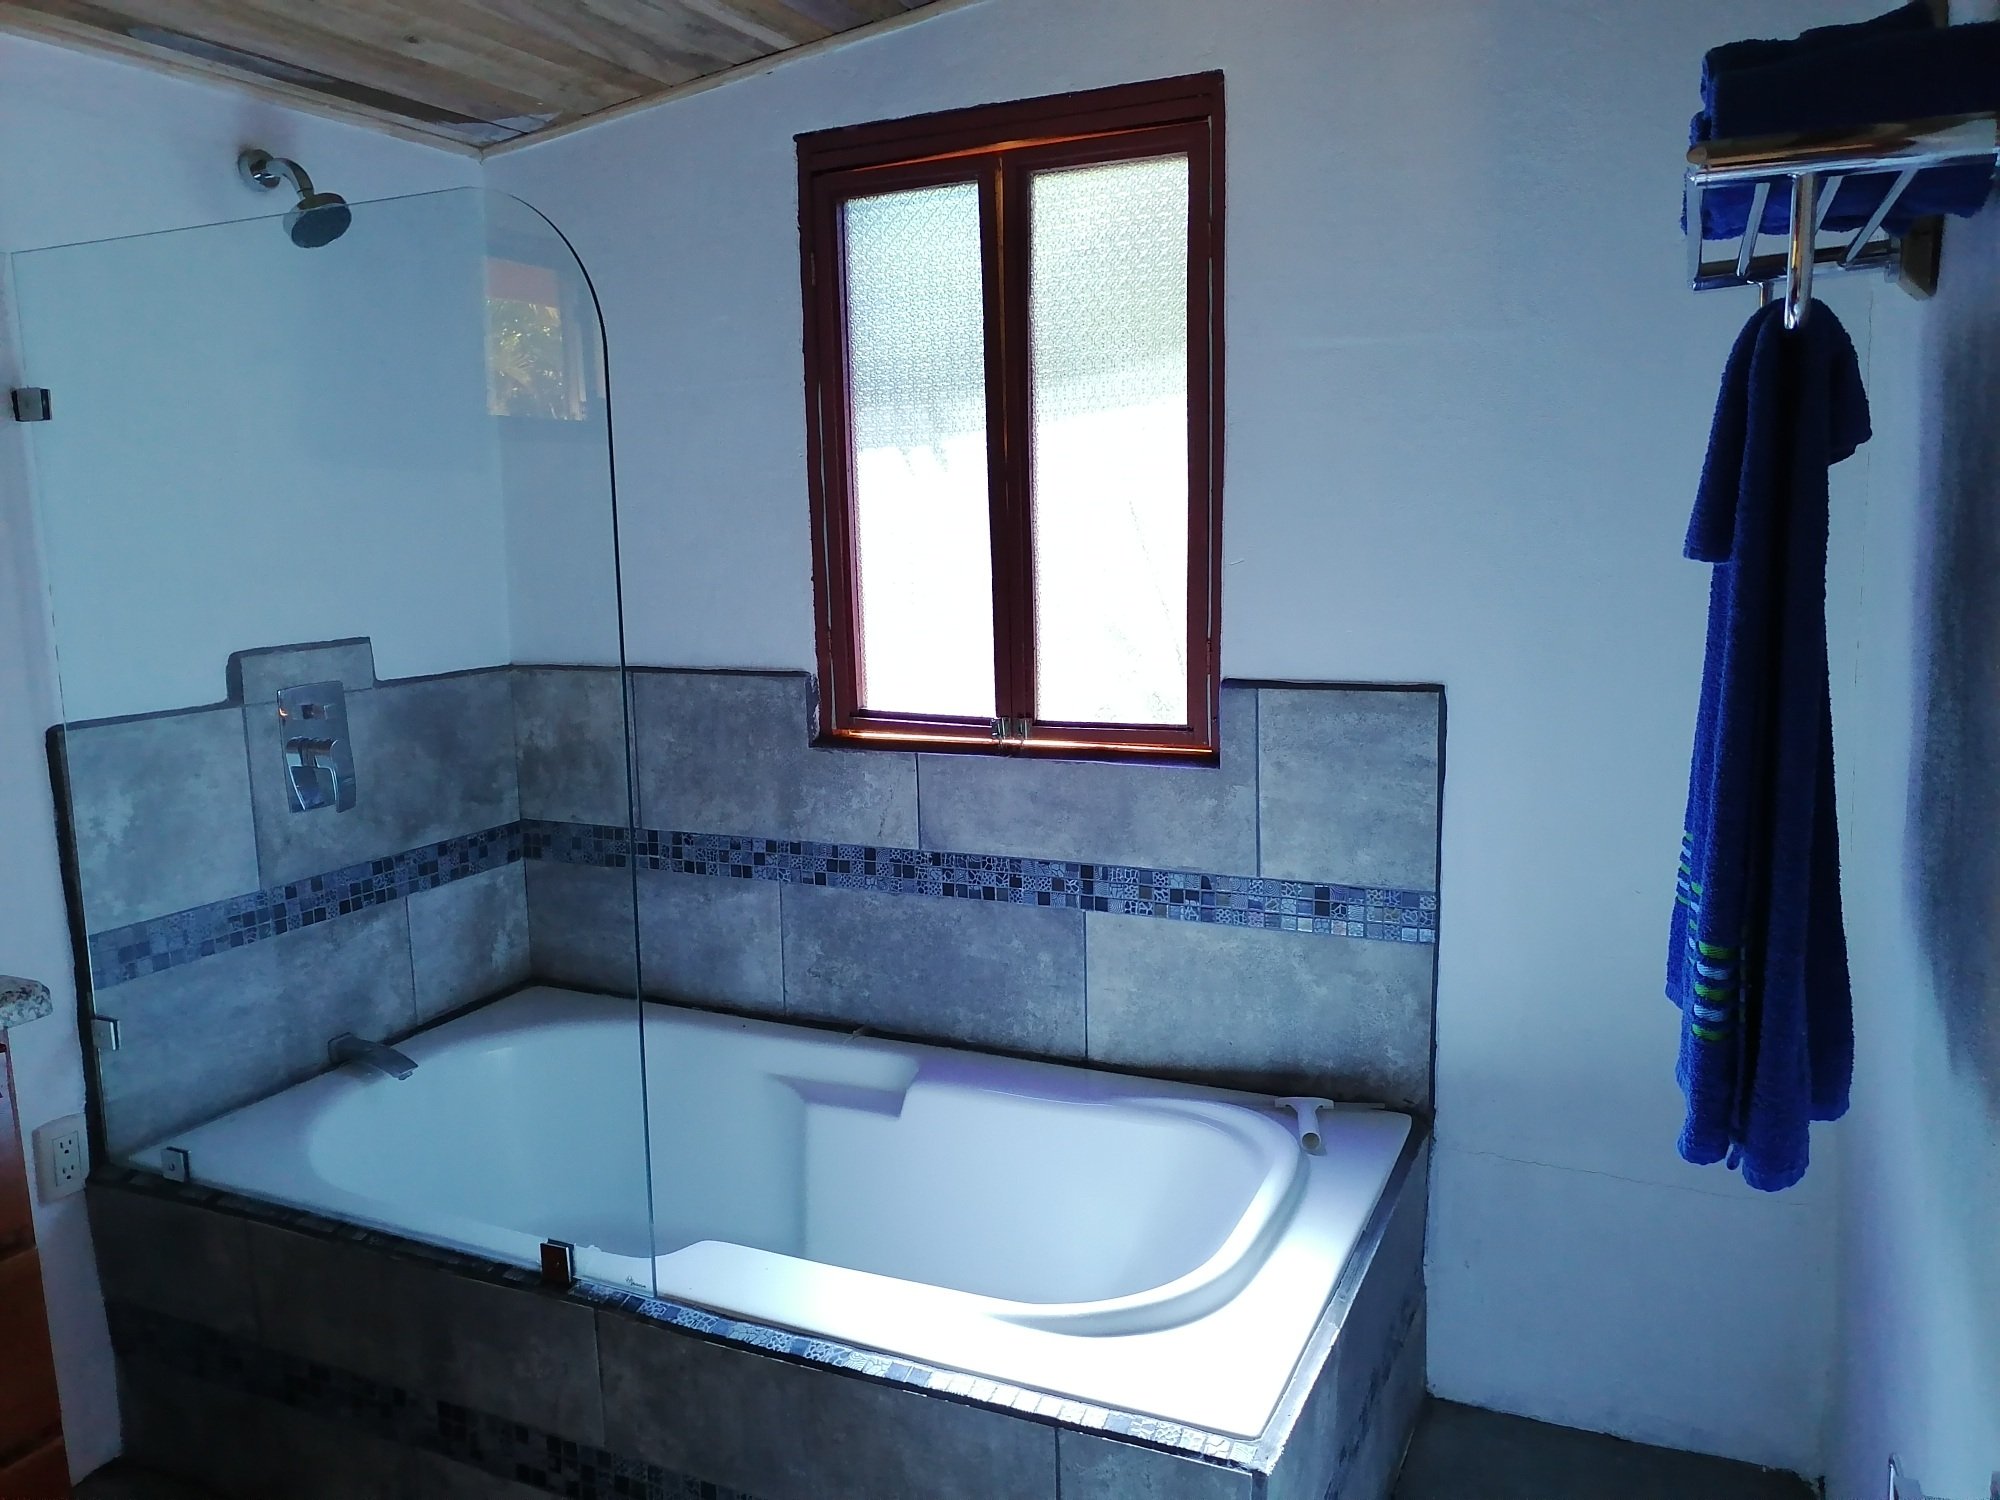 Bathtub at Casa del Rio.jpg